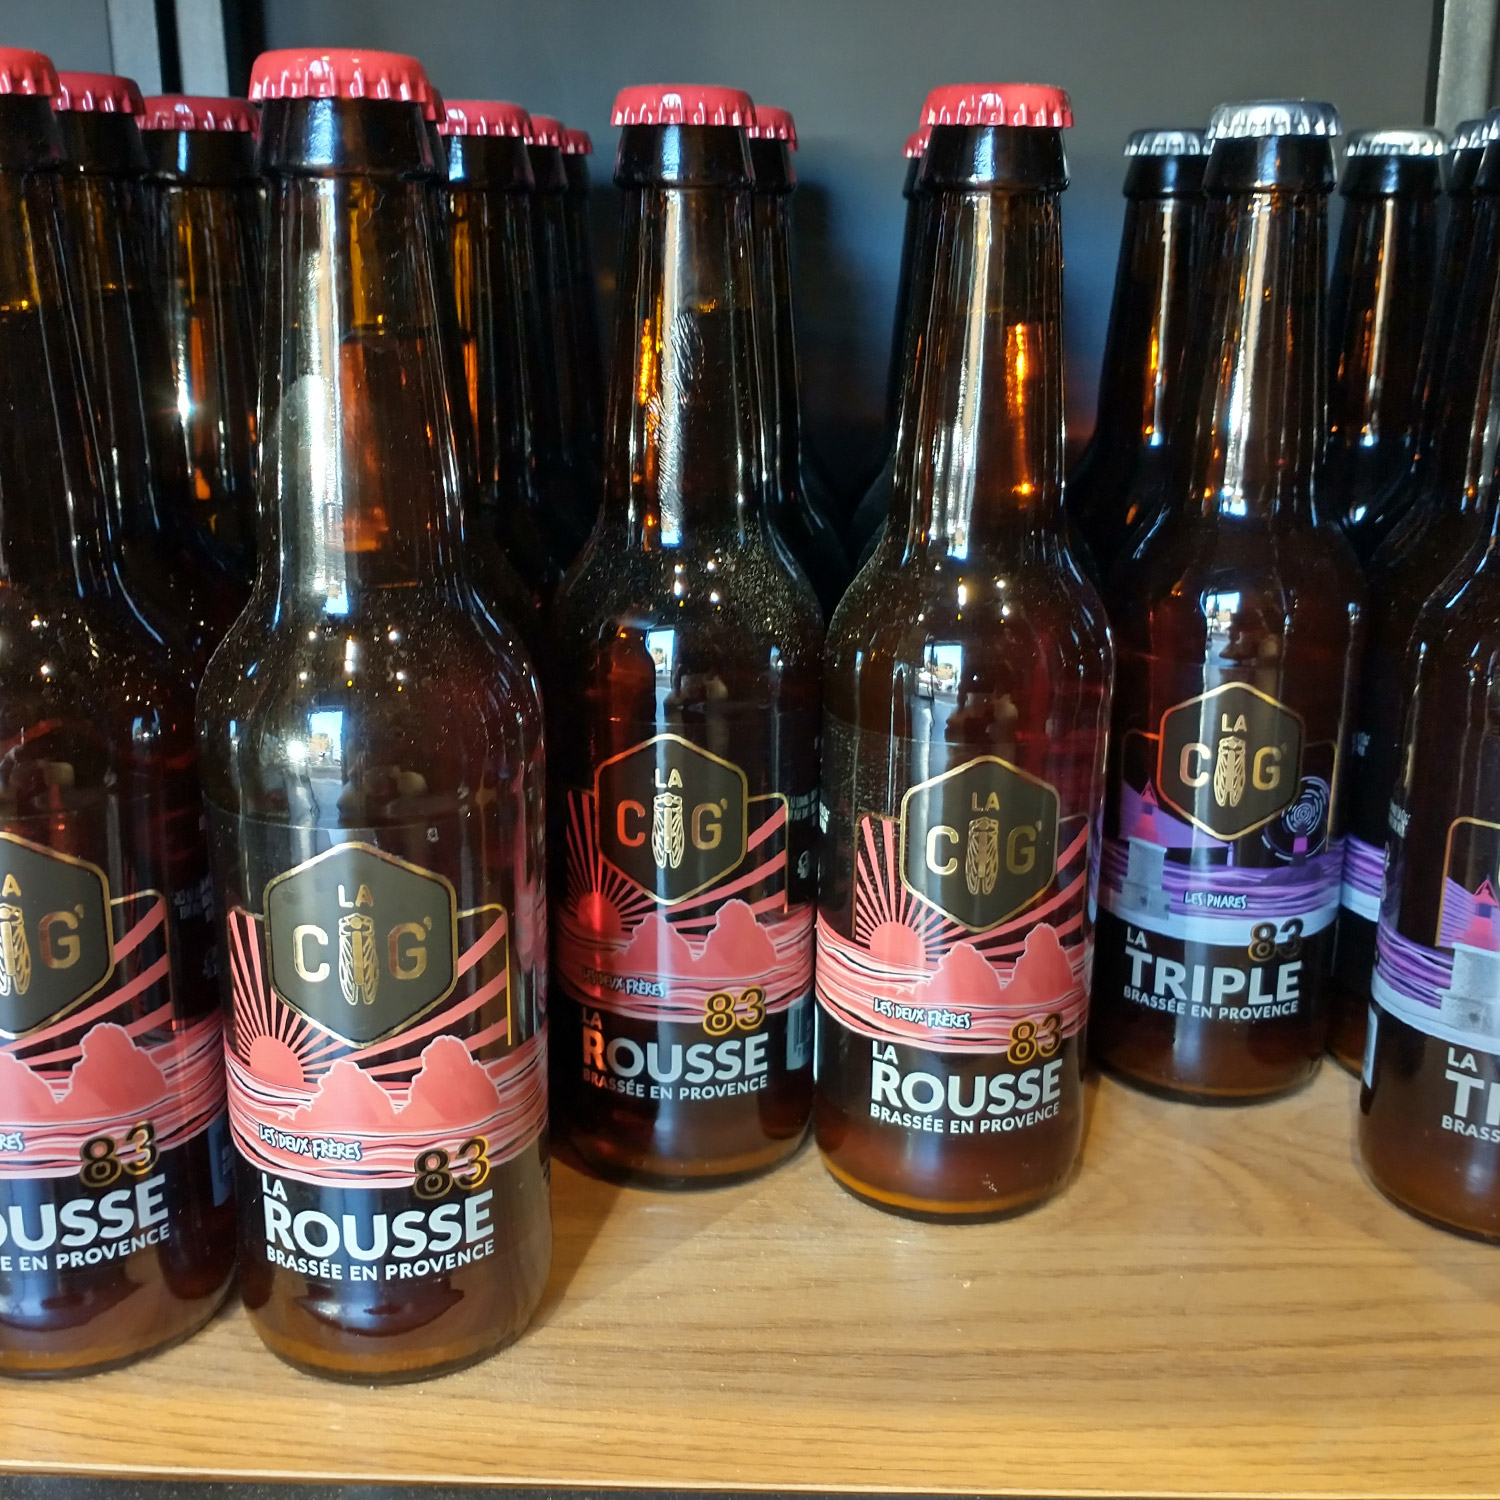 Ensemble des bouteilles de bières de la brasserie La Cig, située à la Seyne-sur-Mer dans le Var, avec des étiquettes transparentes et colorées crées par Yunaima Oyola Yo Design